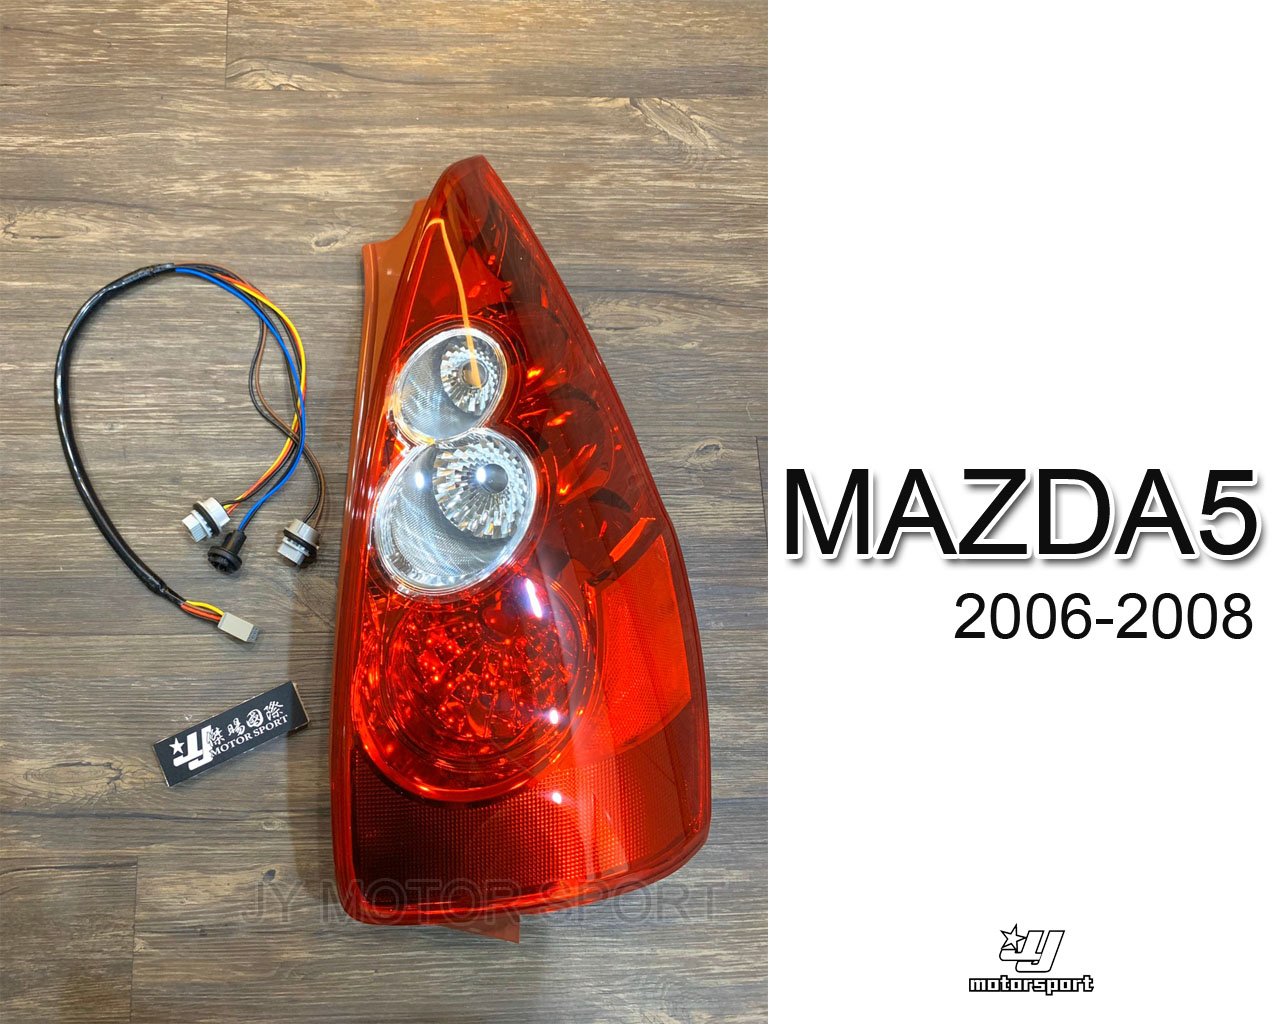 》傑暘國際車身部品《全新 MAZDA5 馬自達 05 06 07 08 年 副廠 原廠型 紅白 尾燈 後燈 附燈泡線組